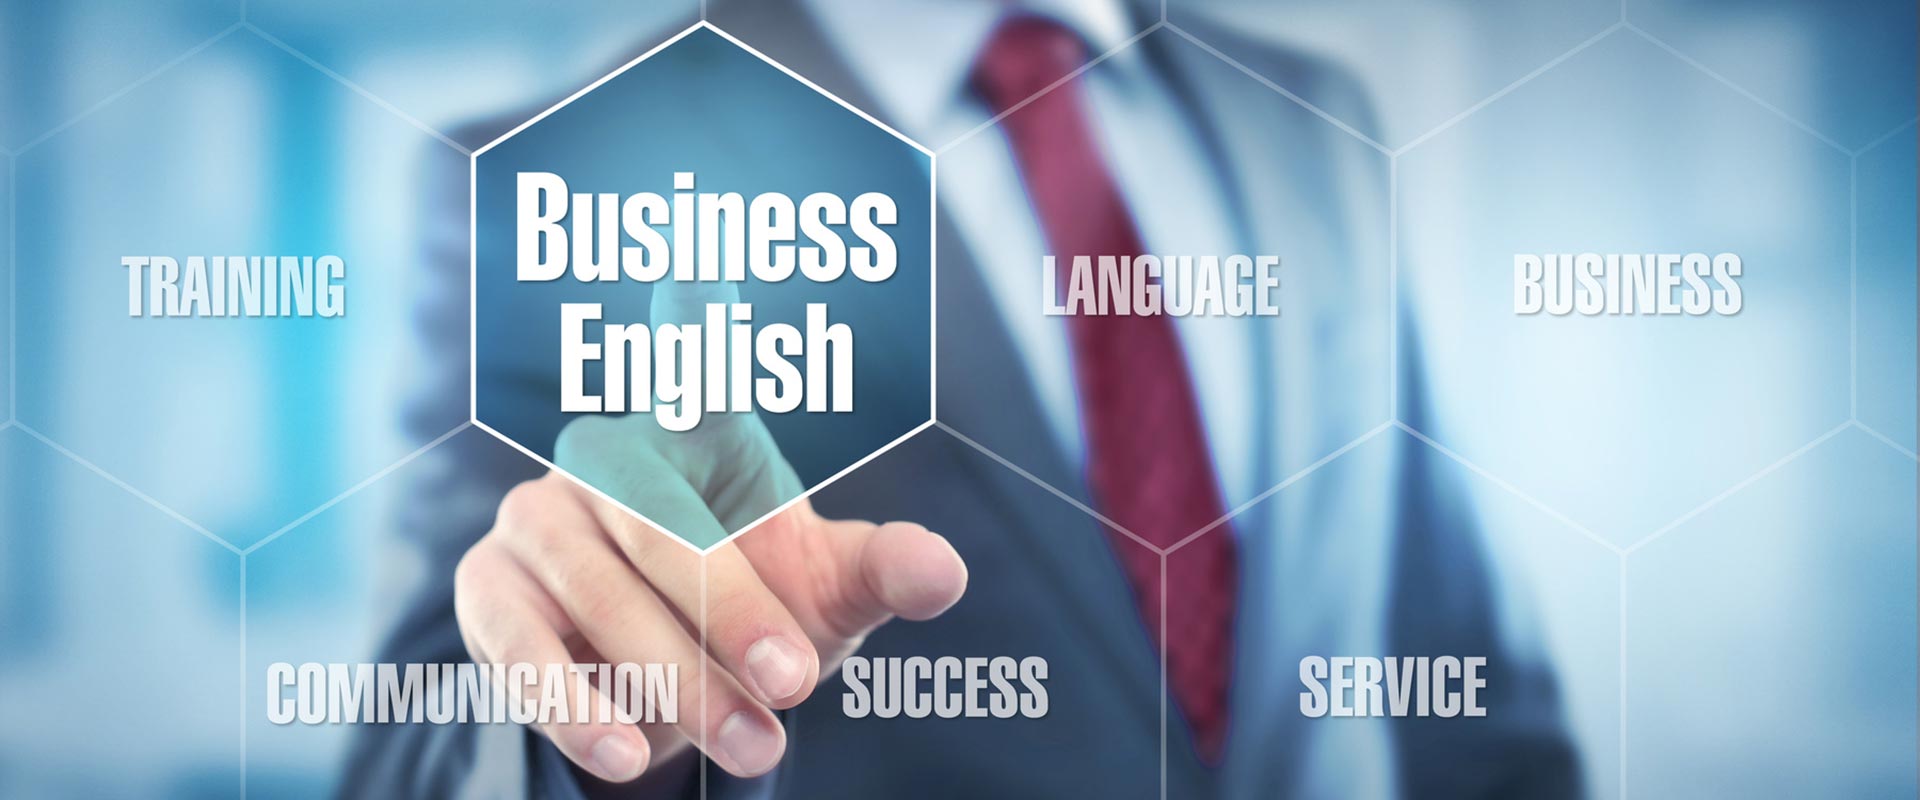 szkolenia językowe dla firm Business English język angielski rozmowa kwalifikacyjna